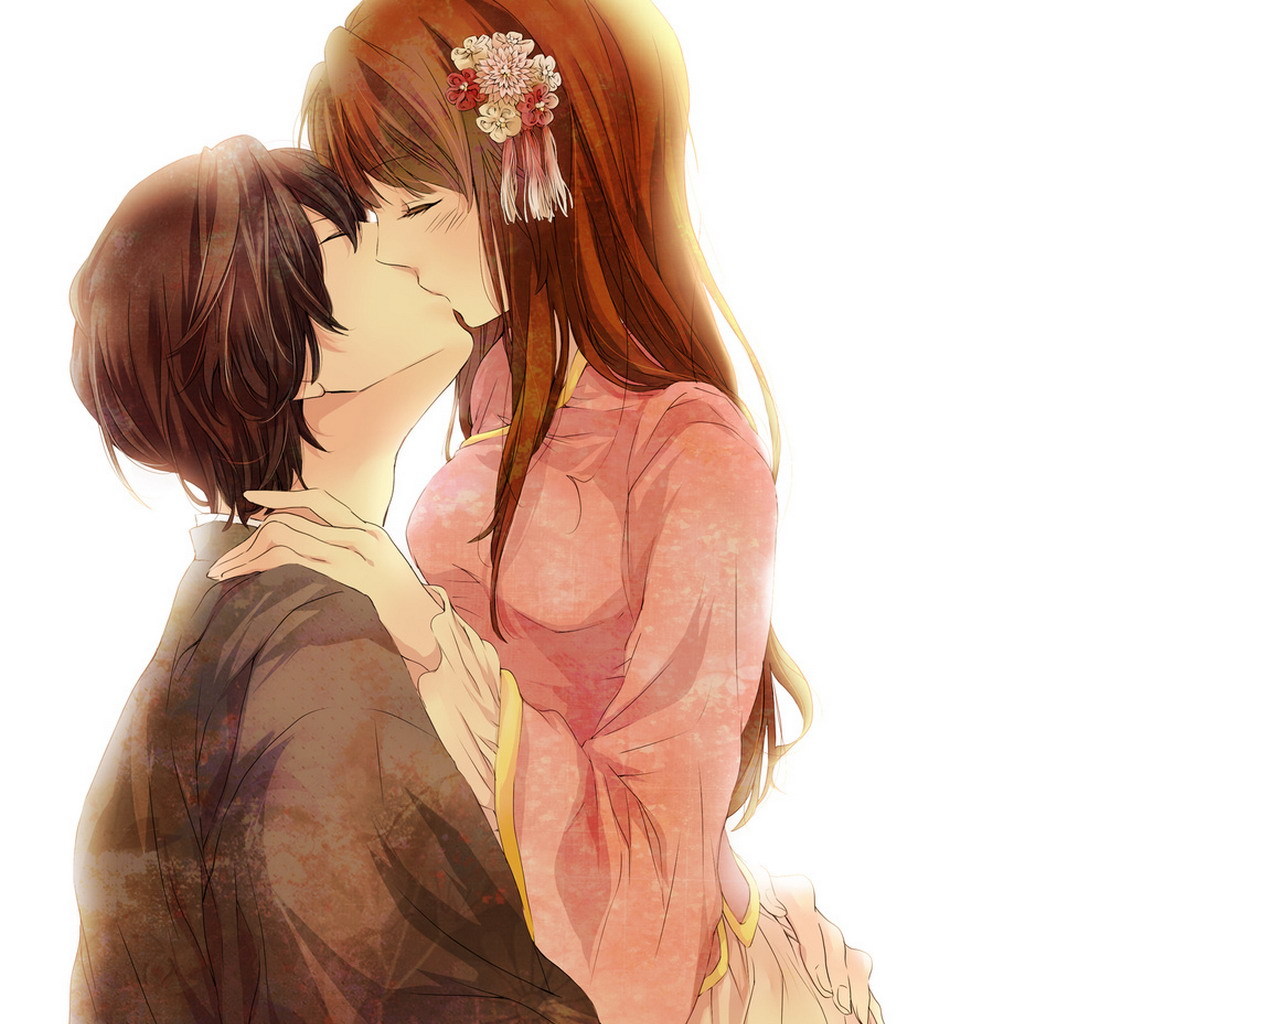 Ảnh Anime hôn dễ thương ngọt ngào